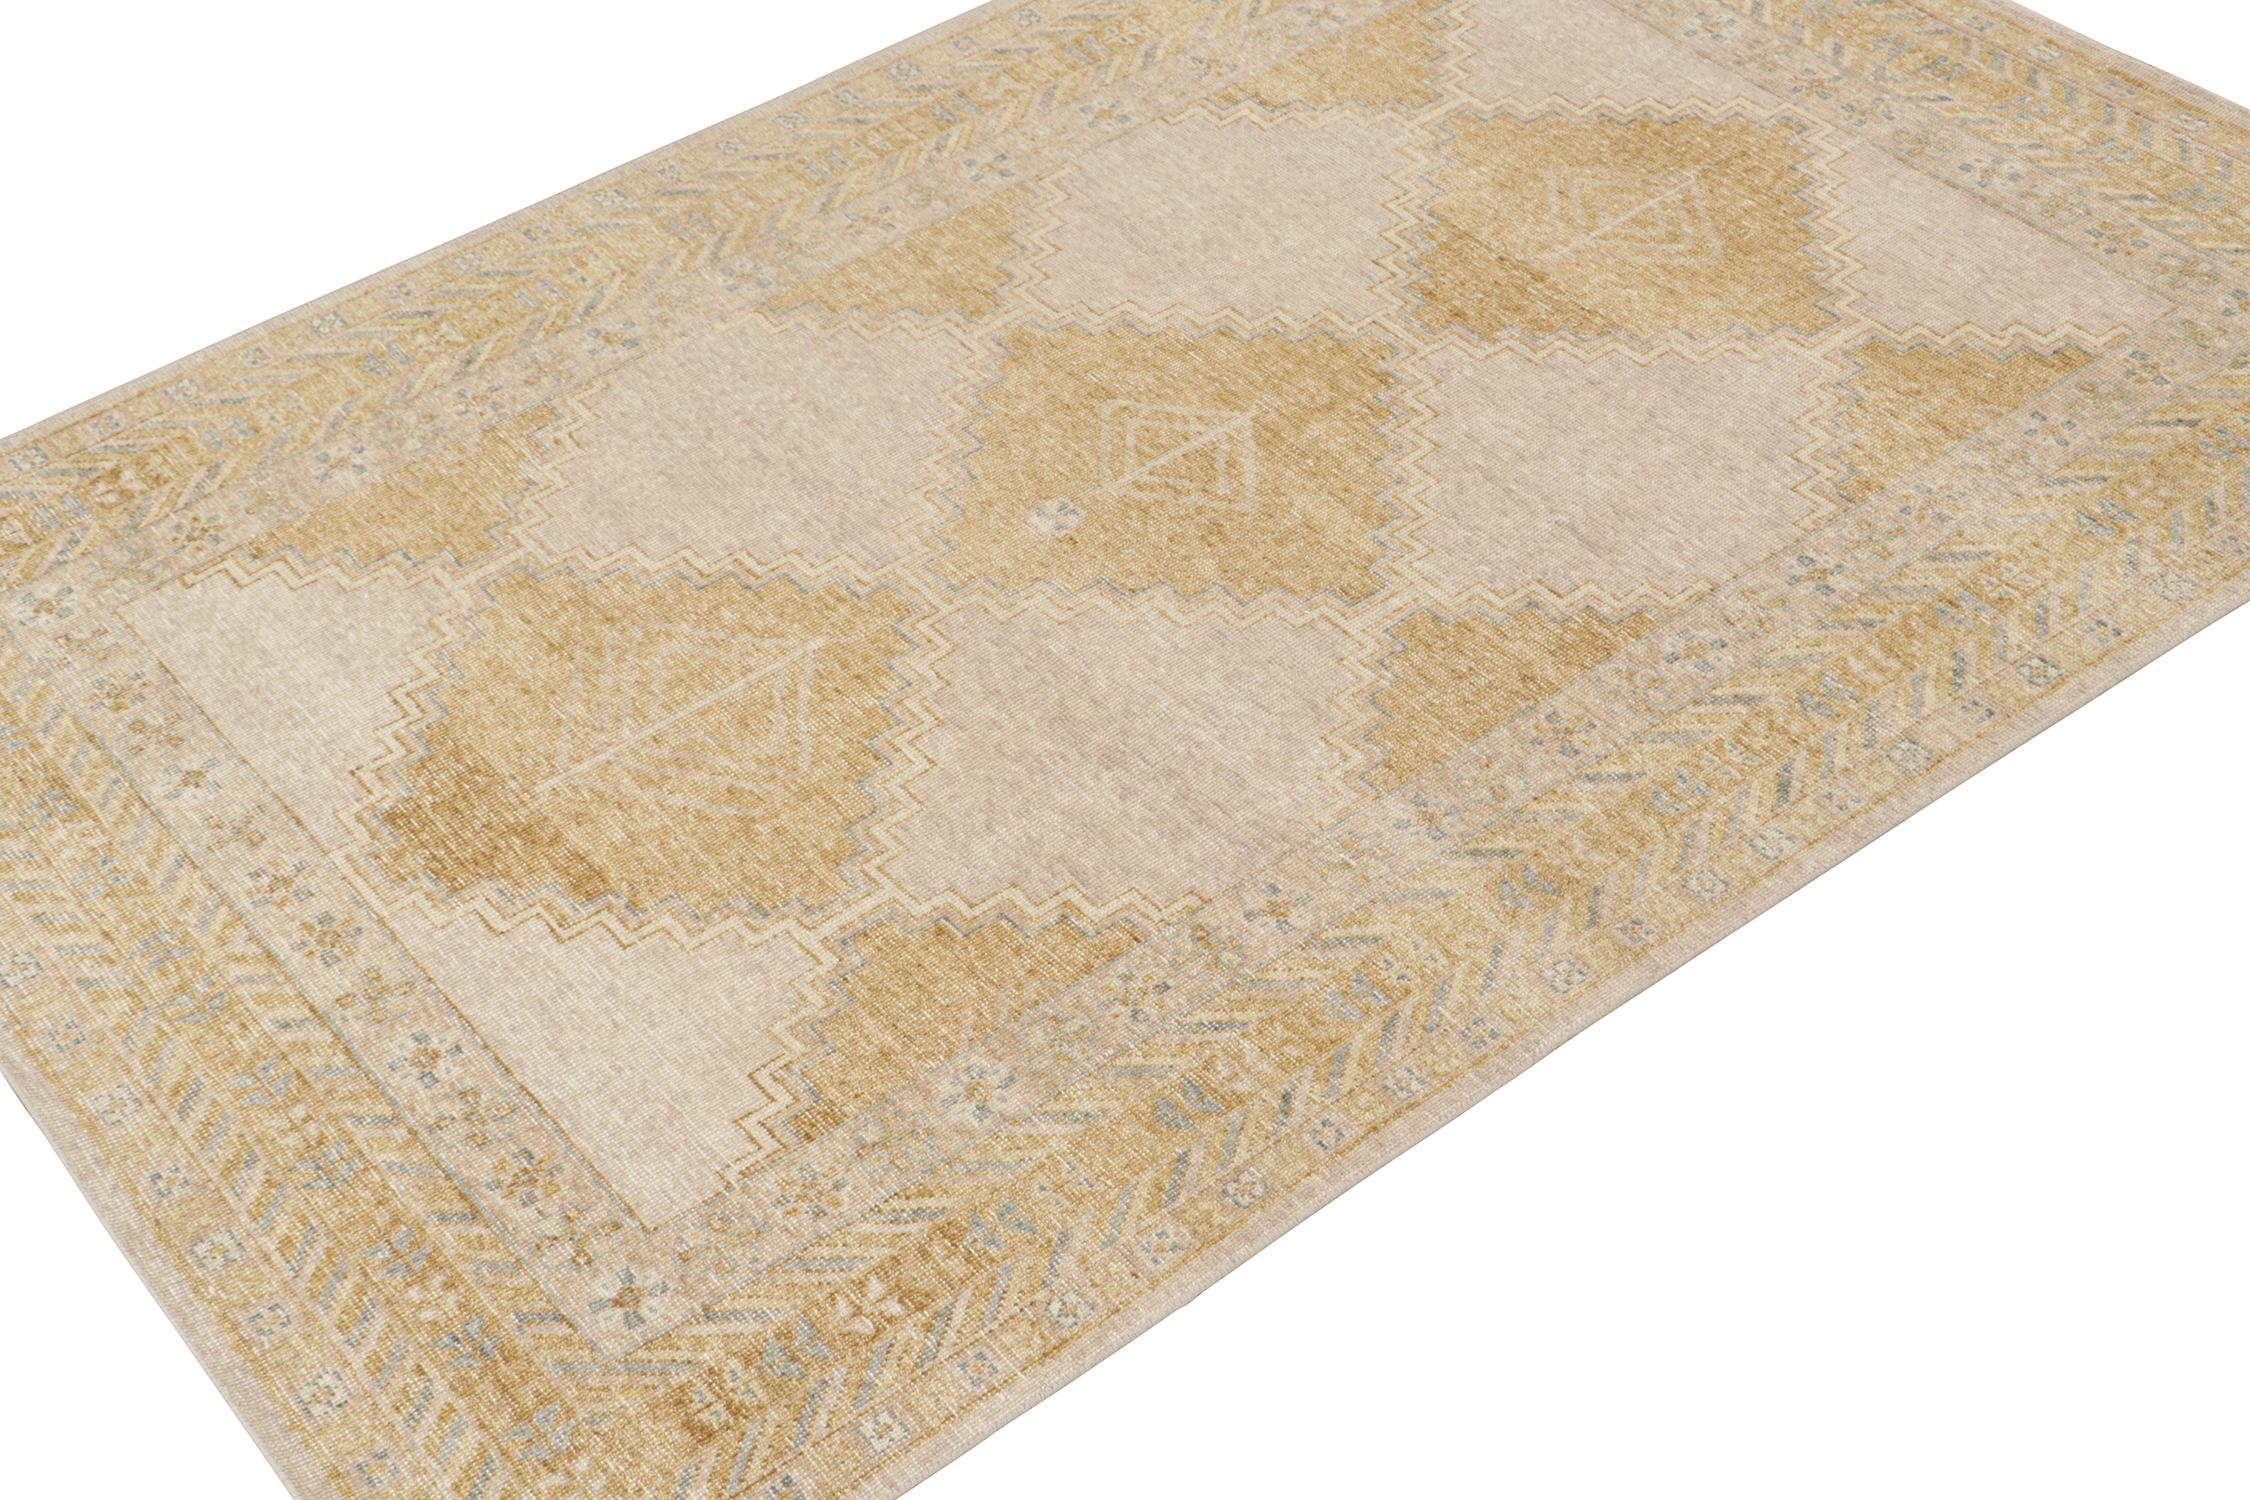 Ce tapis 6x9 est un nouvel ajout à la collection Homage de Rug & Kilim. Noué à la main en laine et en coton, il reprend le motif d'un ancien tapis tribal dans une nouvelle version de la texture vieillie.

Sur le Design :

On ne peut s'empêcher